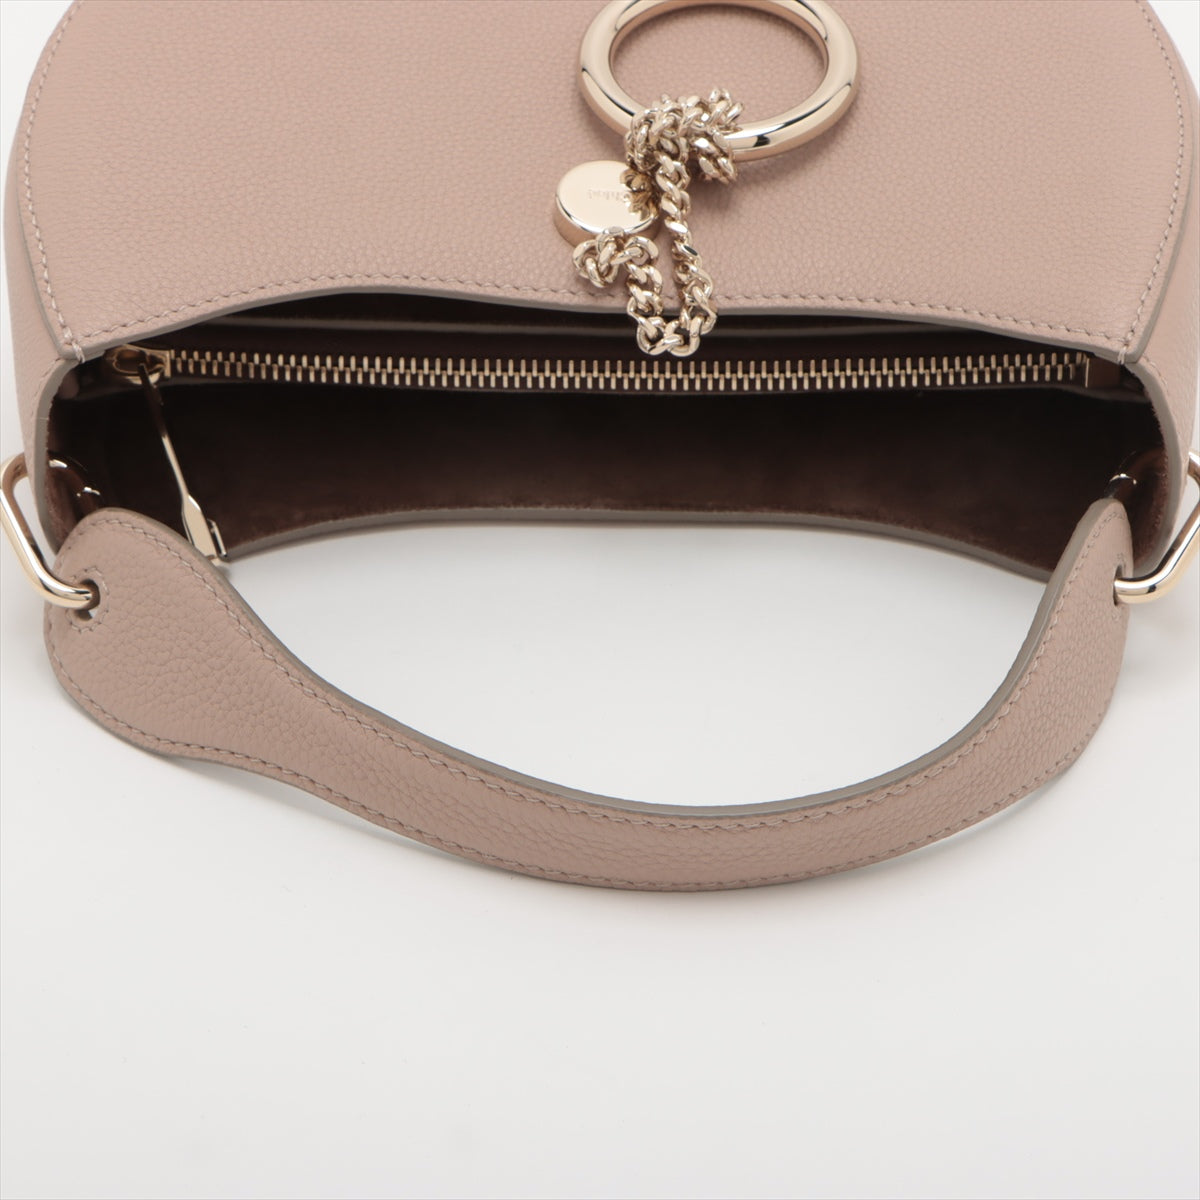 Chloe Arlene Leather Hand bag Pink beige